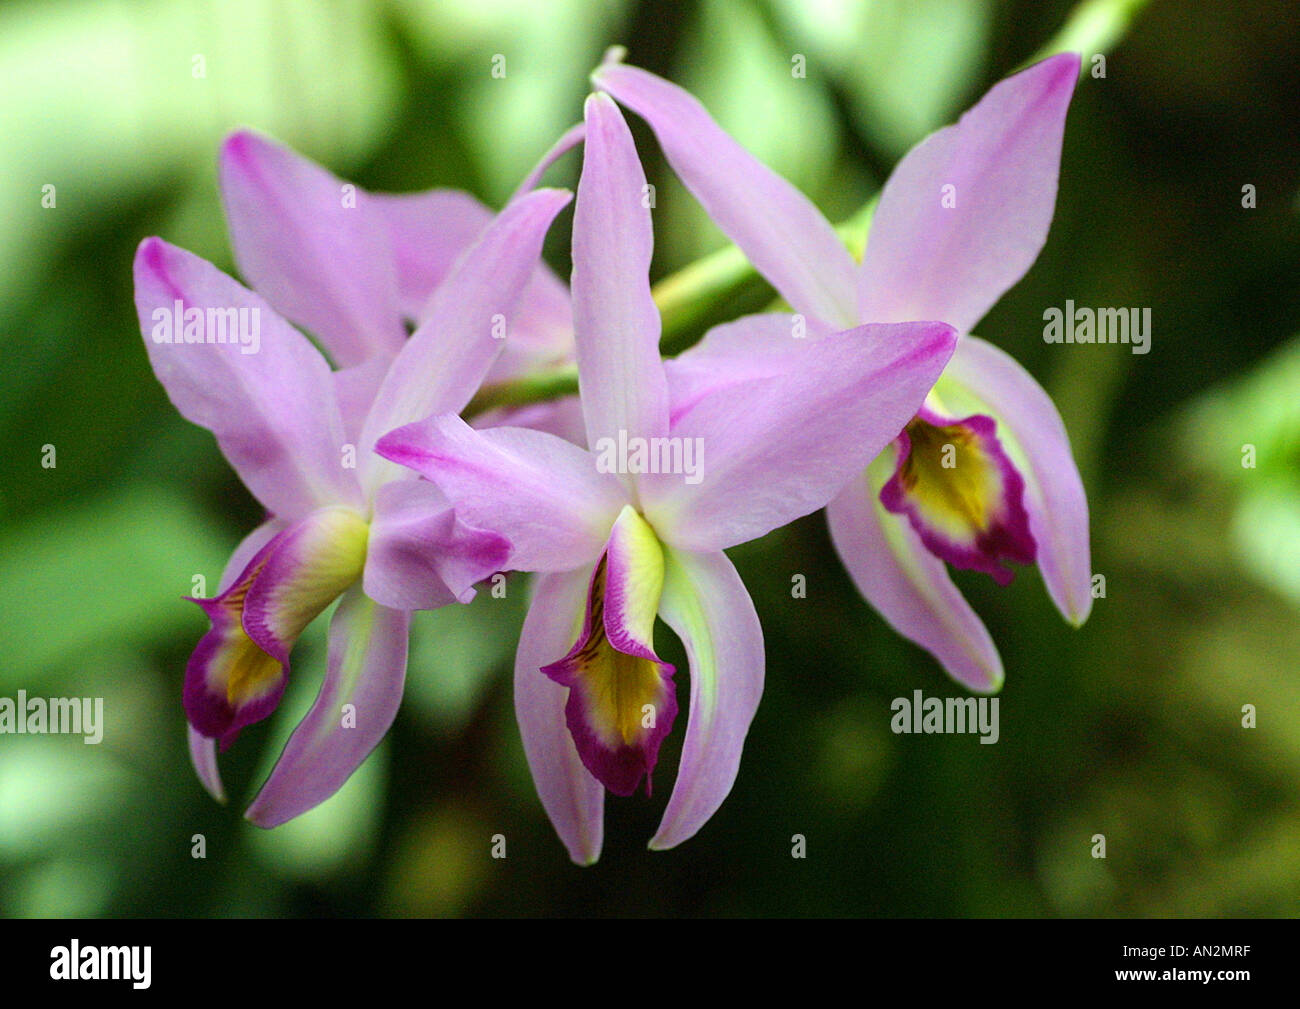 Laelia hybrid (Laelia-Hybride), flowers Stock Photo